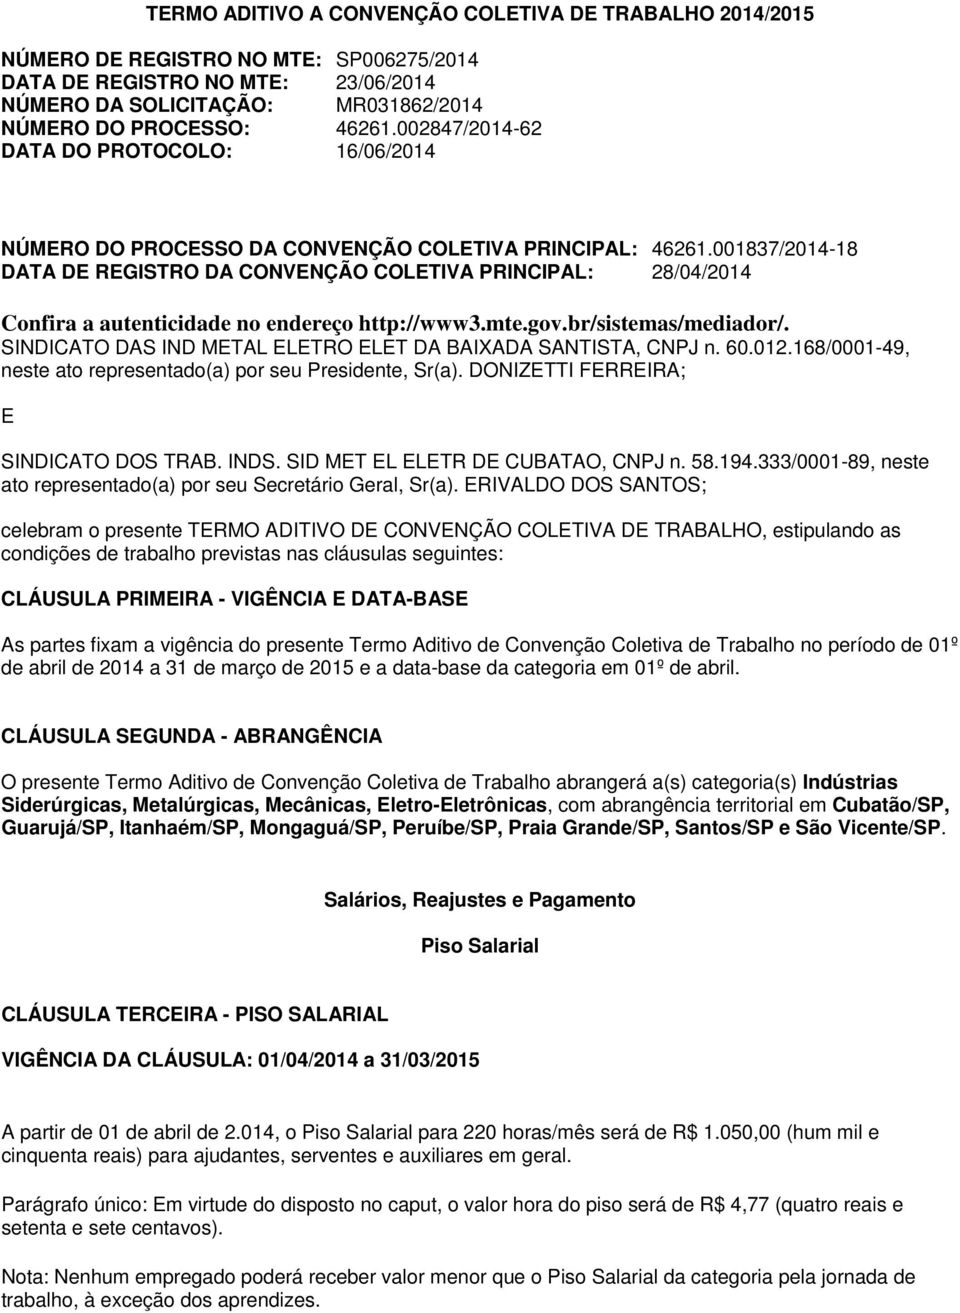 001837/2014-18 DATA DE REGISTRO DA CONVENÇÃO COLETIVA PRINCIPAL: 28/04/2014 Confira a autenticidade no endereço http://www3.mte.gov.br/sistemas/mediador/.